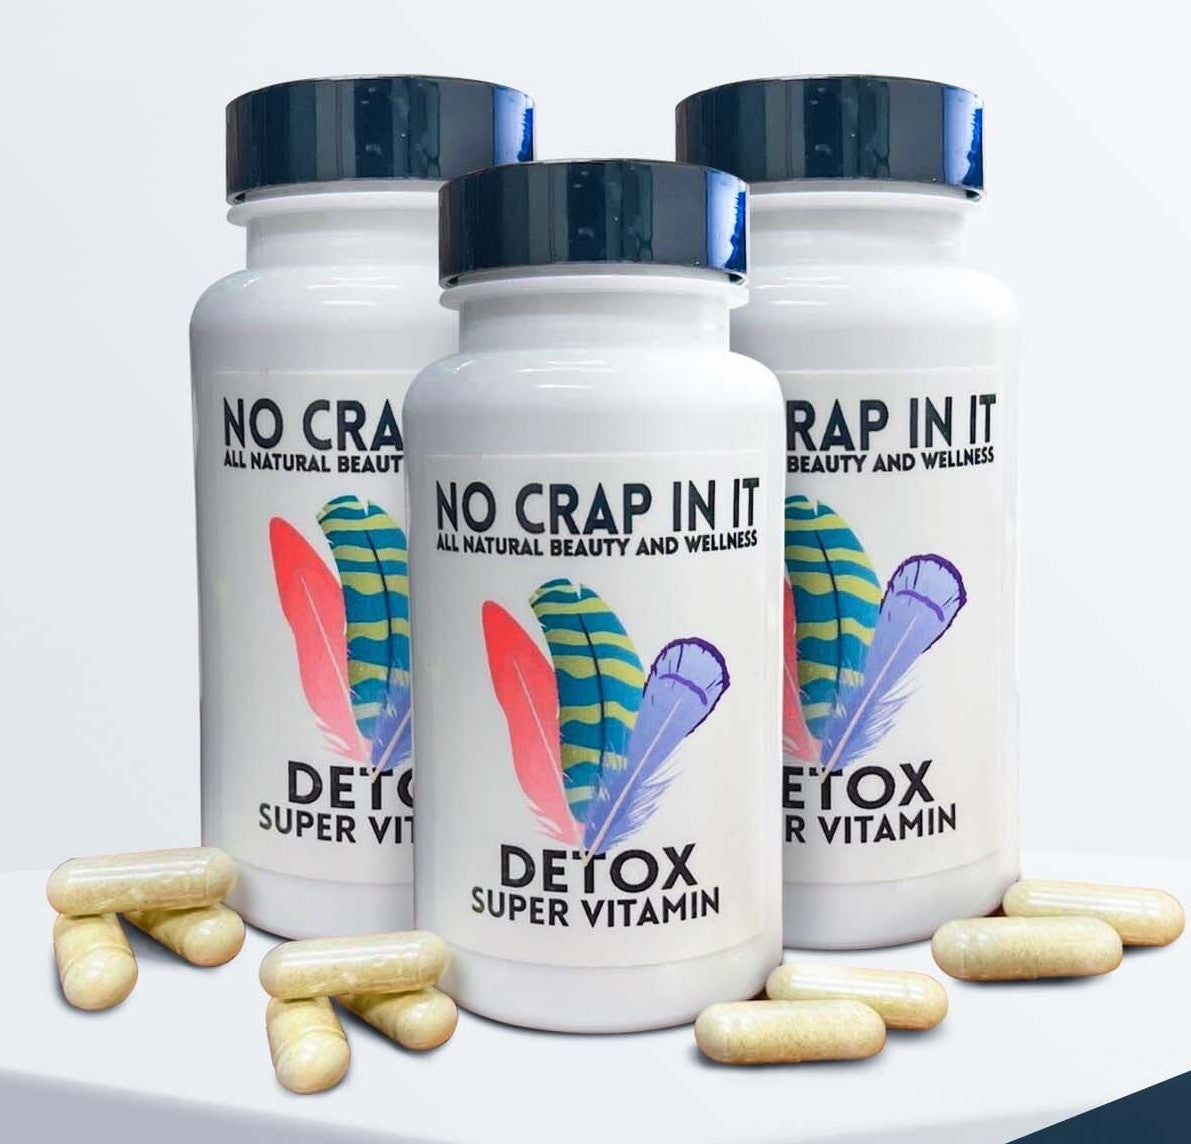 Detox Super Vitamin